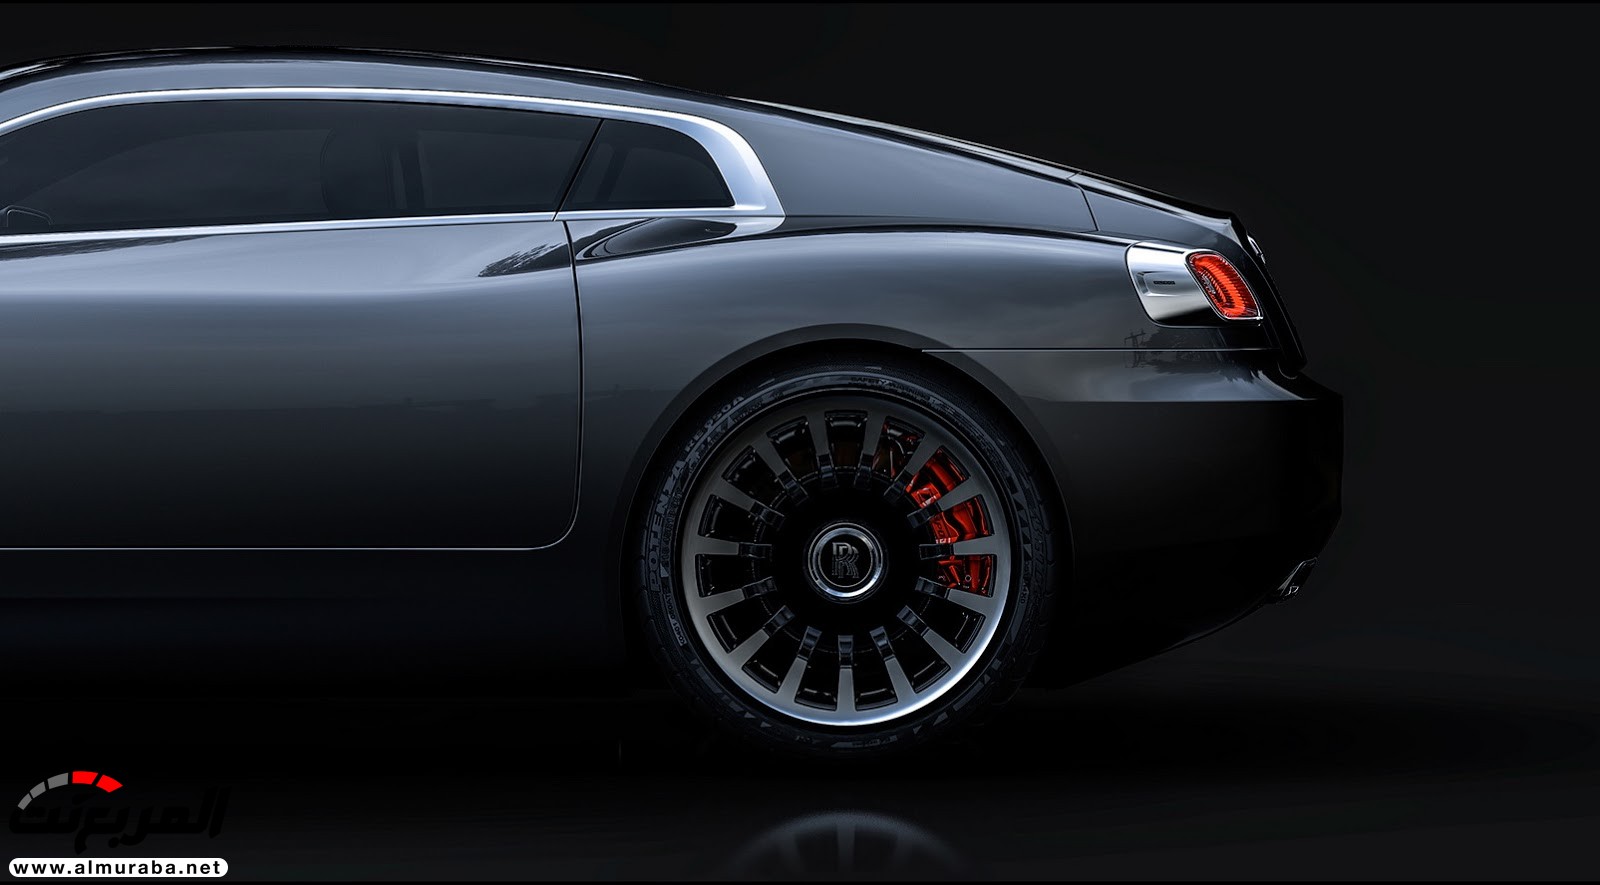 "صور افتراضية" لما يمكن أن تبدو عليه "رولز رويس" رايث كوبيه 2020 Rolls-Royce Wraith Coupe 62